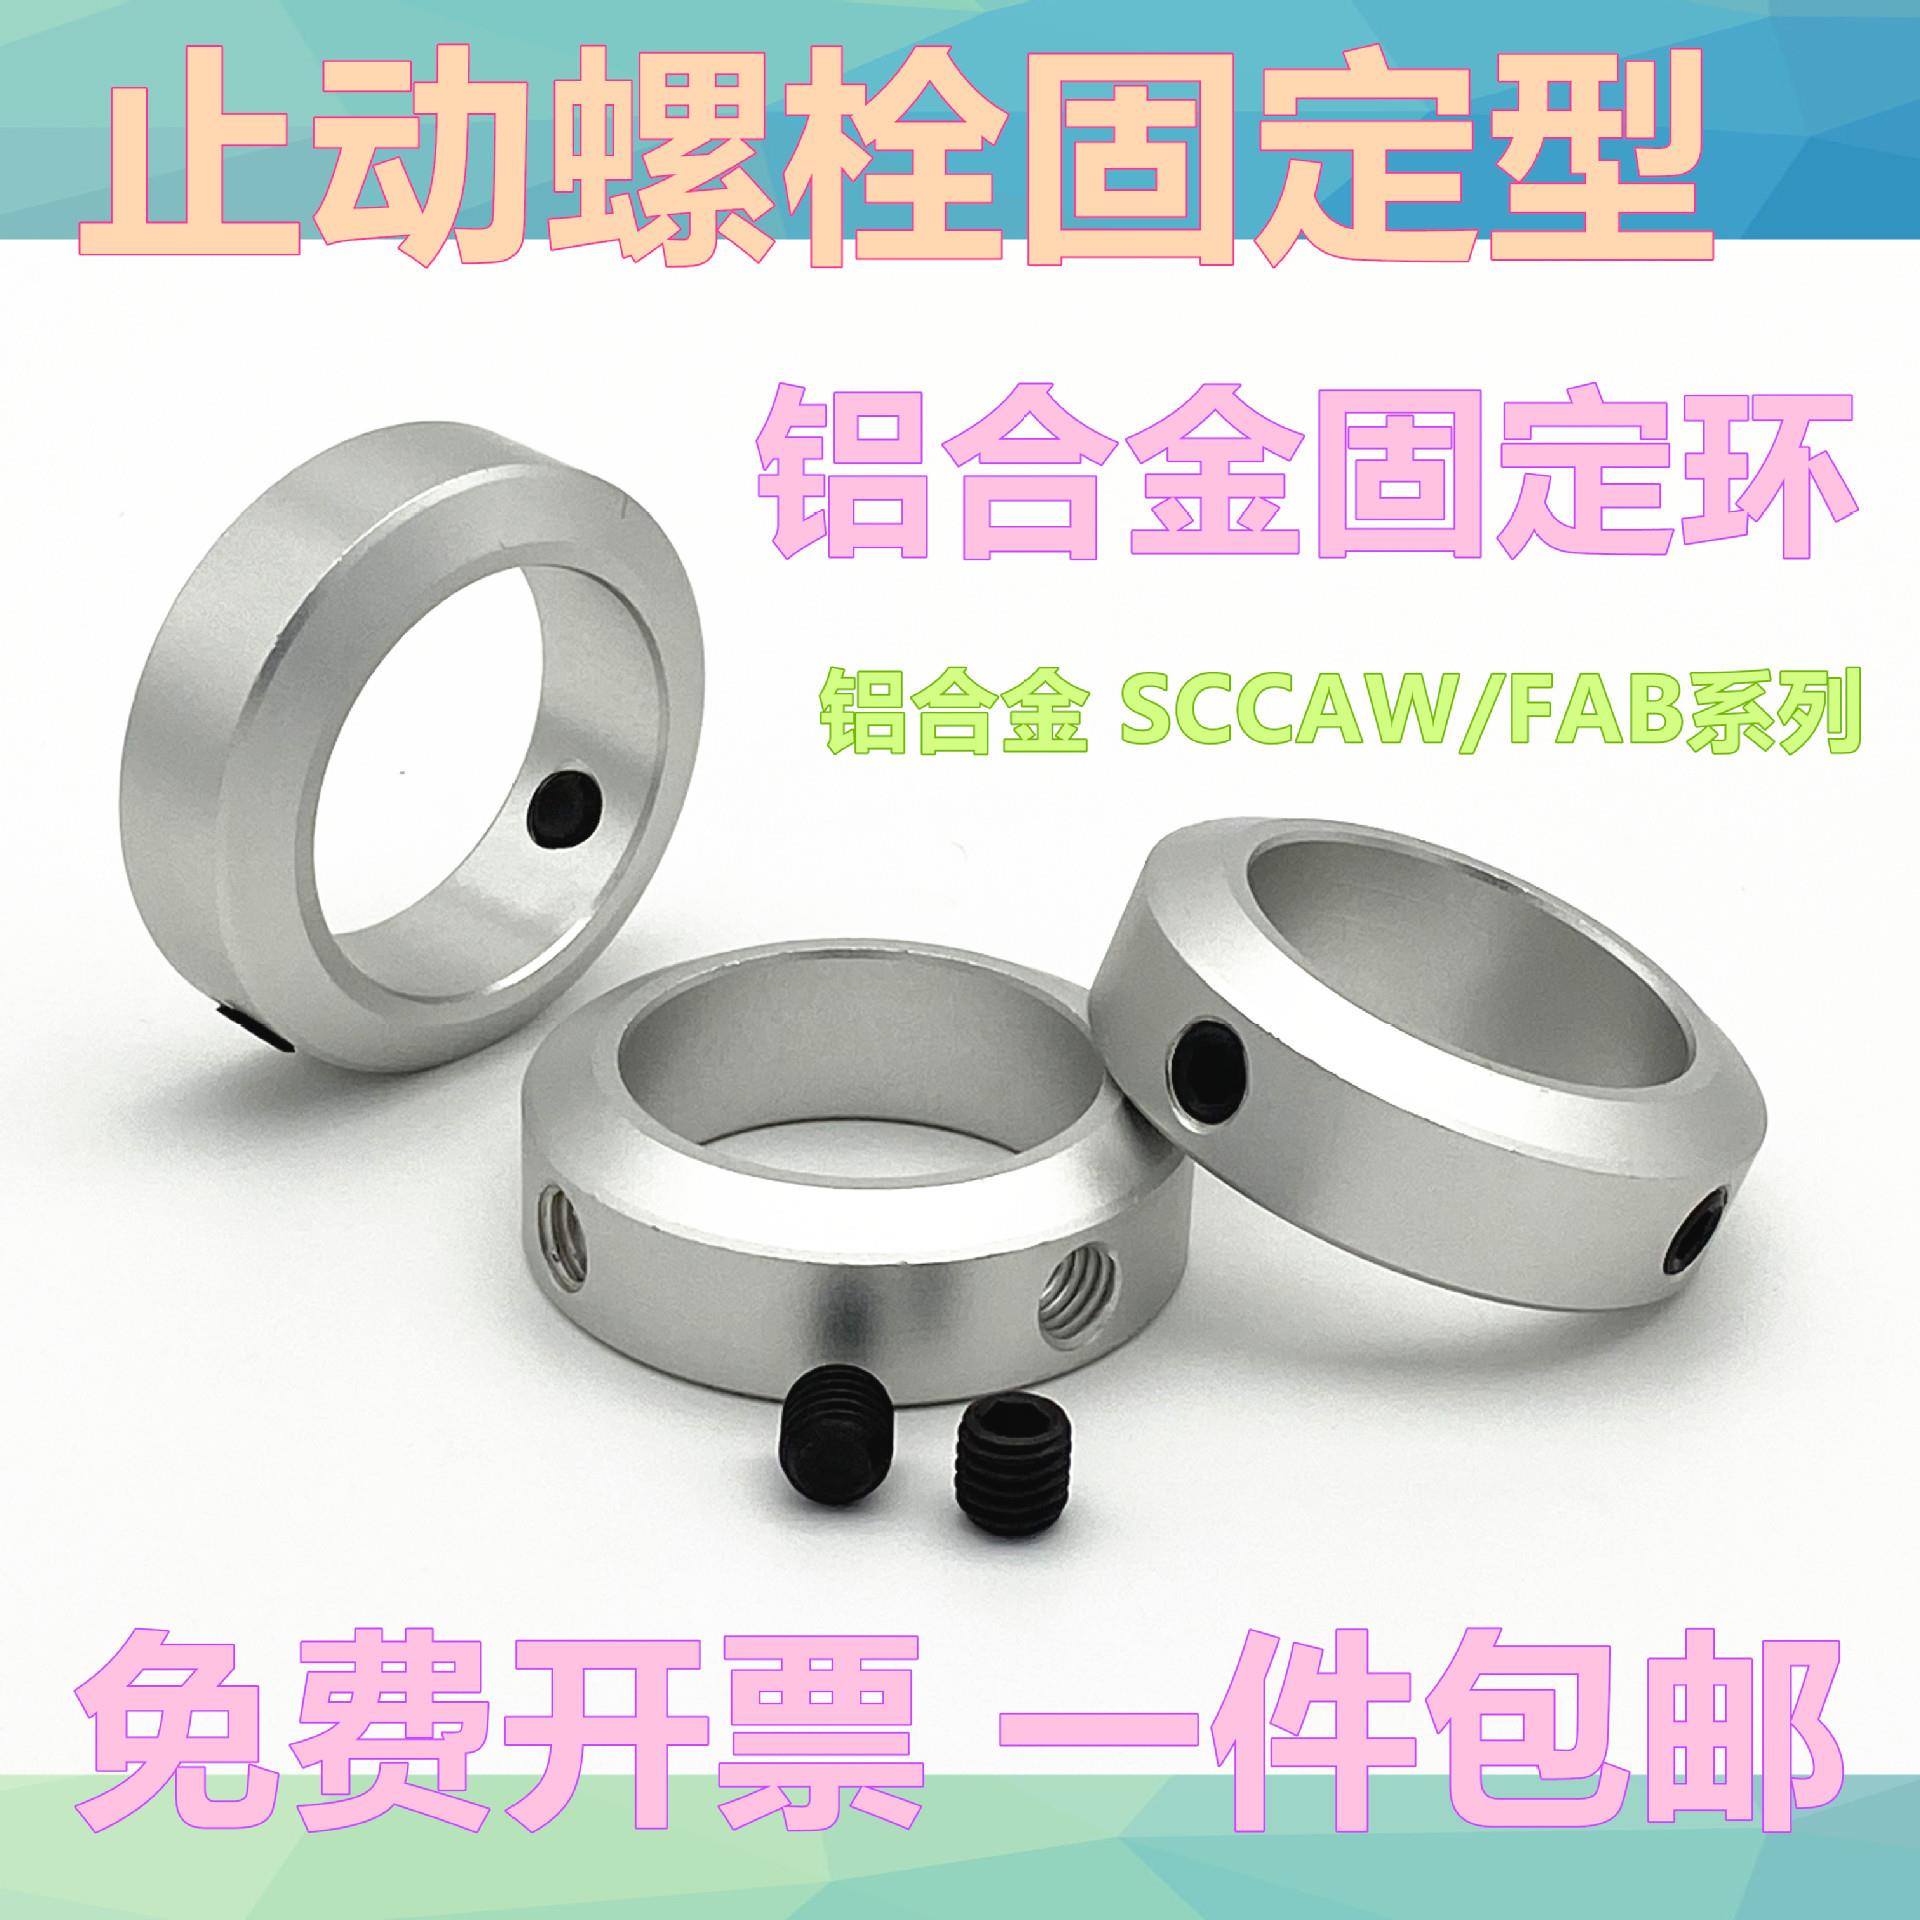 固定环止动固定环螺丝固定型限位轴合用定位档W圈SCCA/FAB22铝